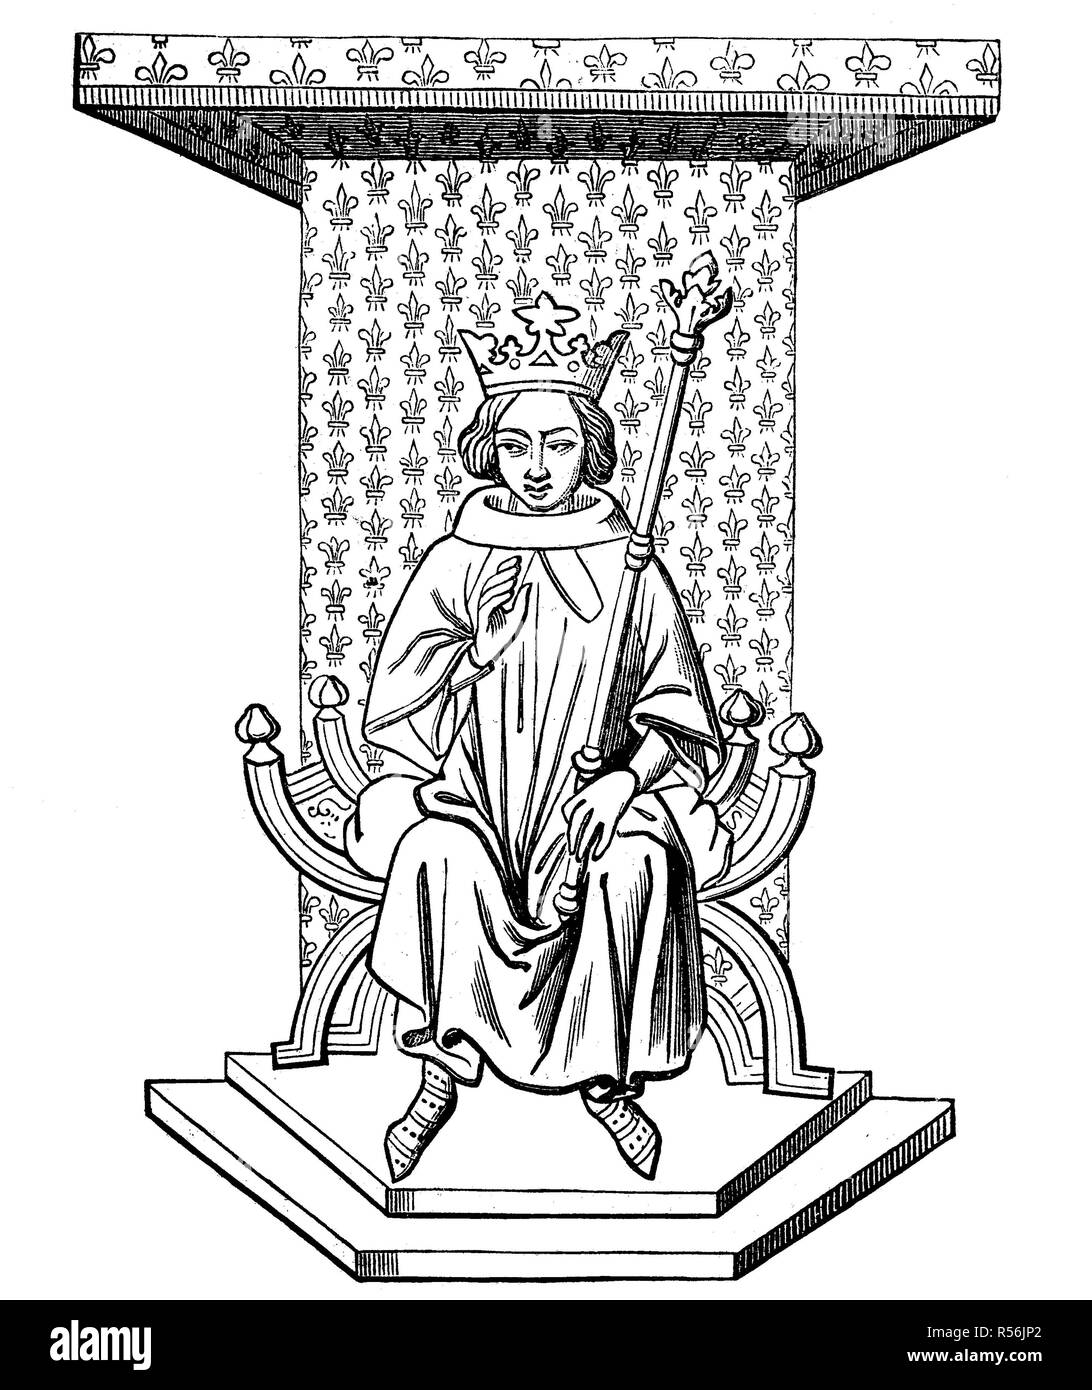 Le roi Louis IX de France sur le trône, après une miniature du xive siècle de la Bibliothèque Nationale de Paris, gravure sur bois Banque D'Images